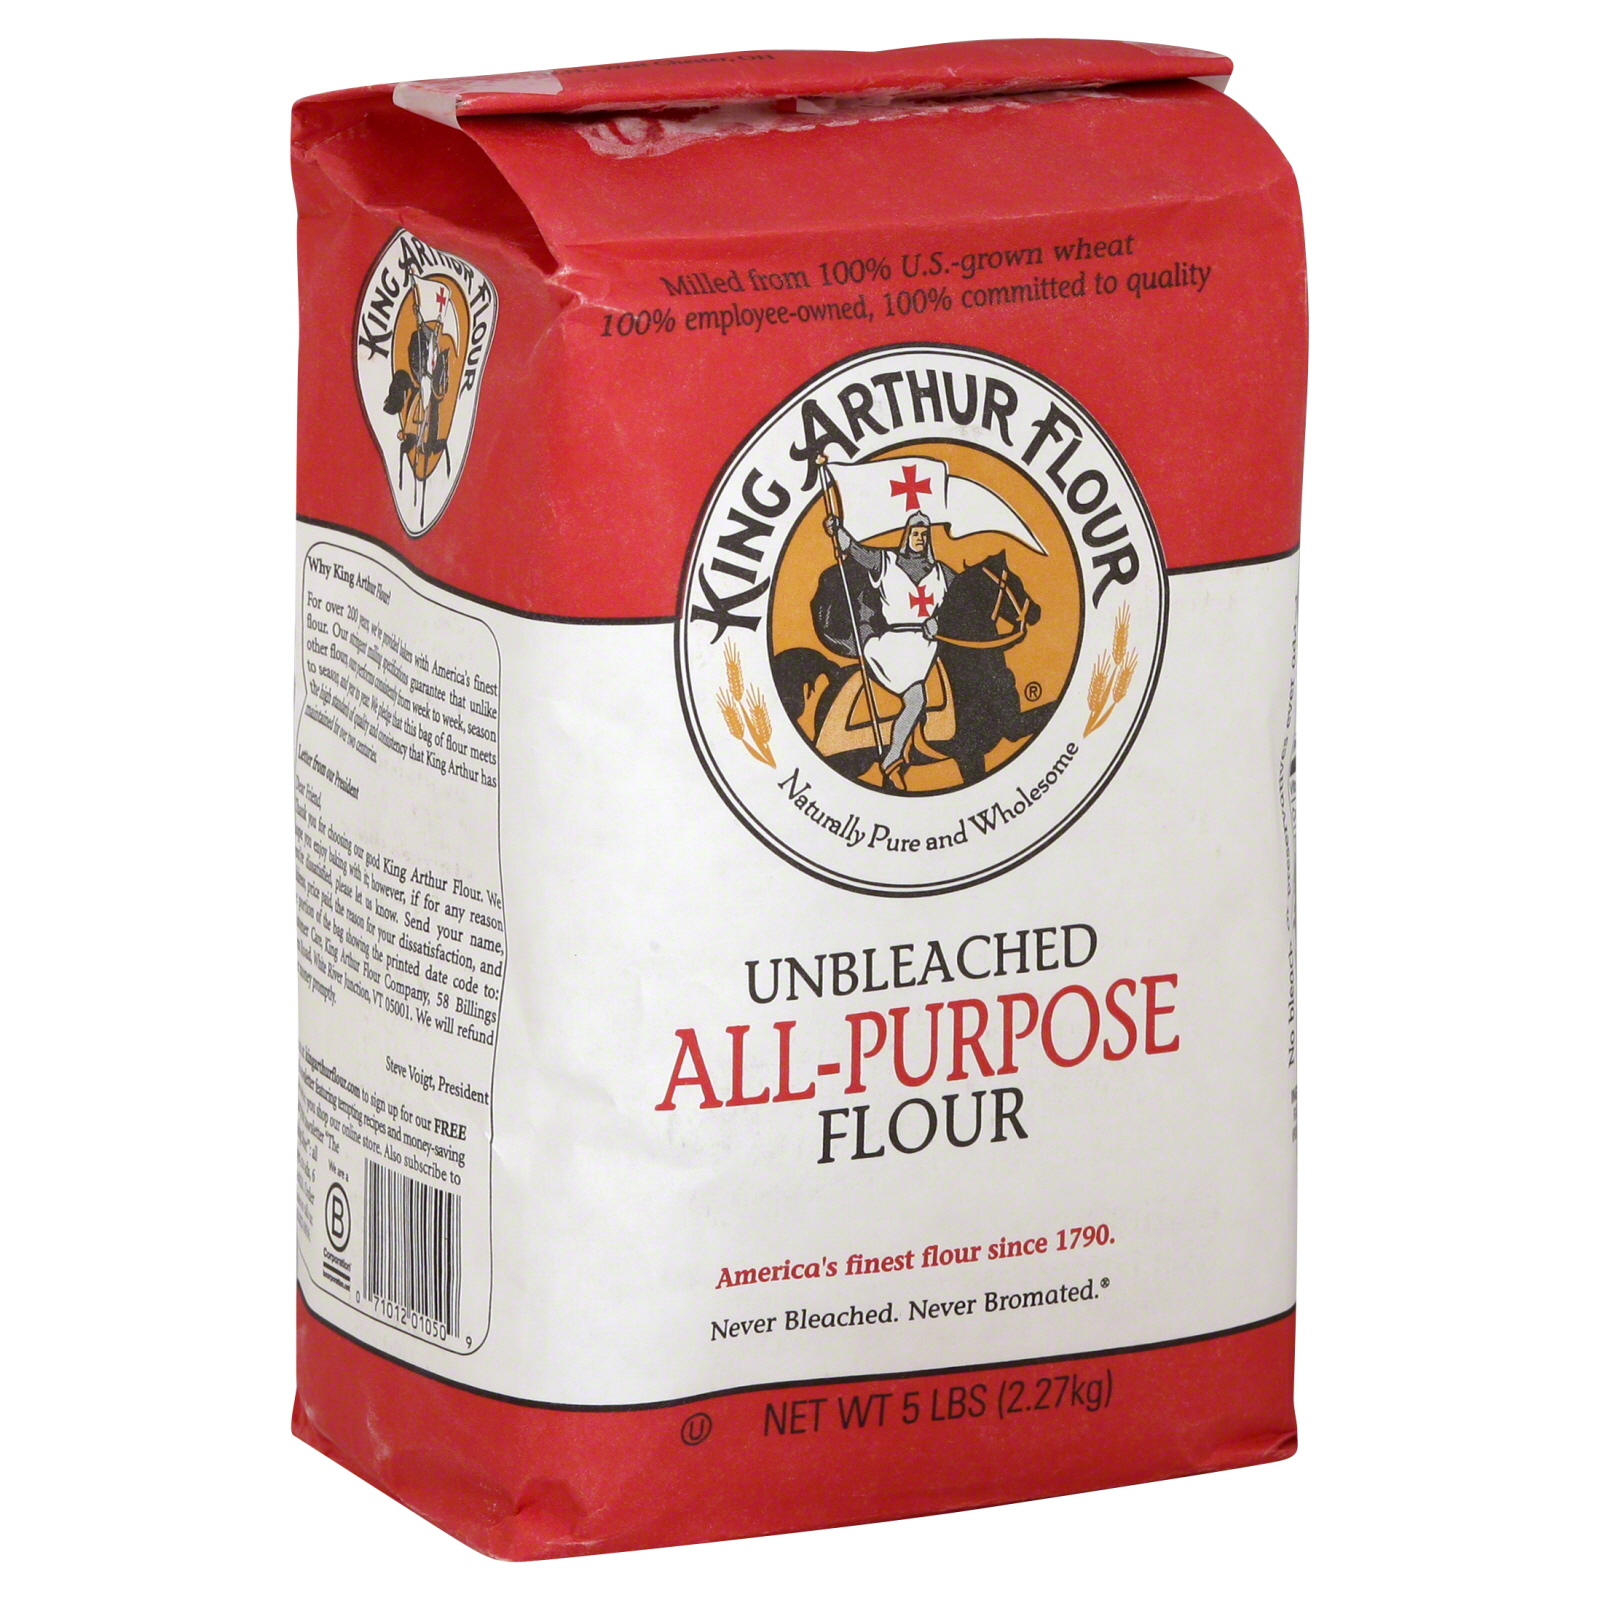 King Arthur Flour Flour, All-Purpose, Unbleached, 5 lb (2.27 kg)